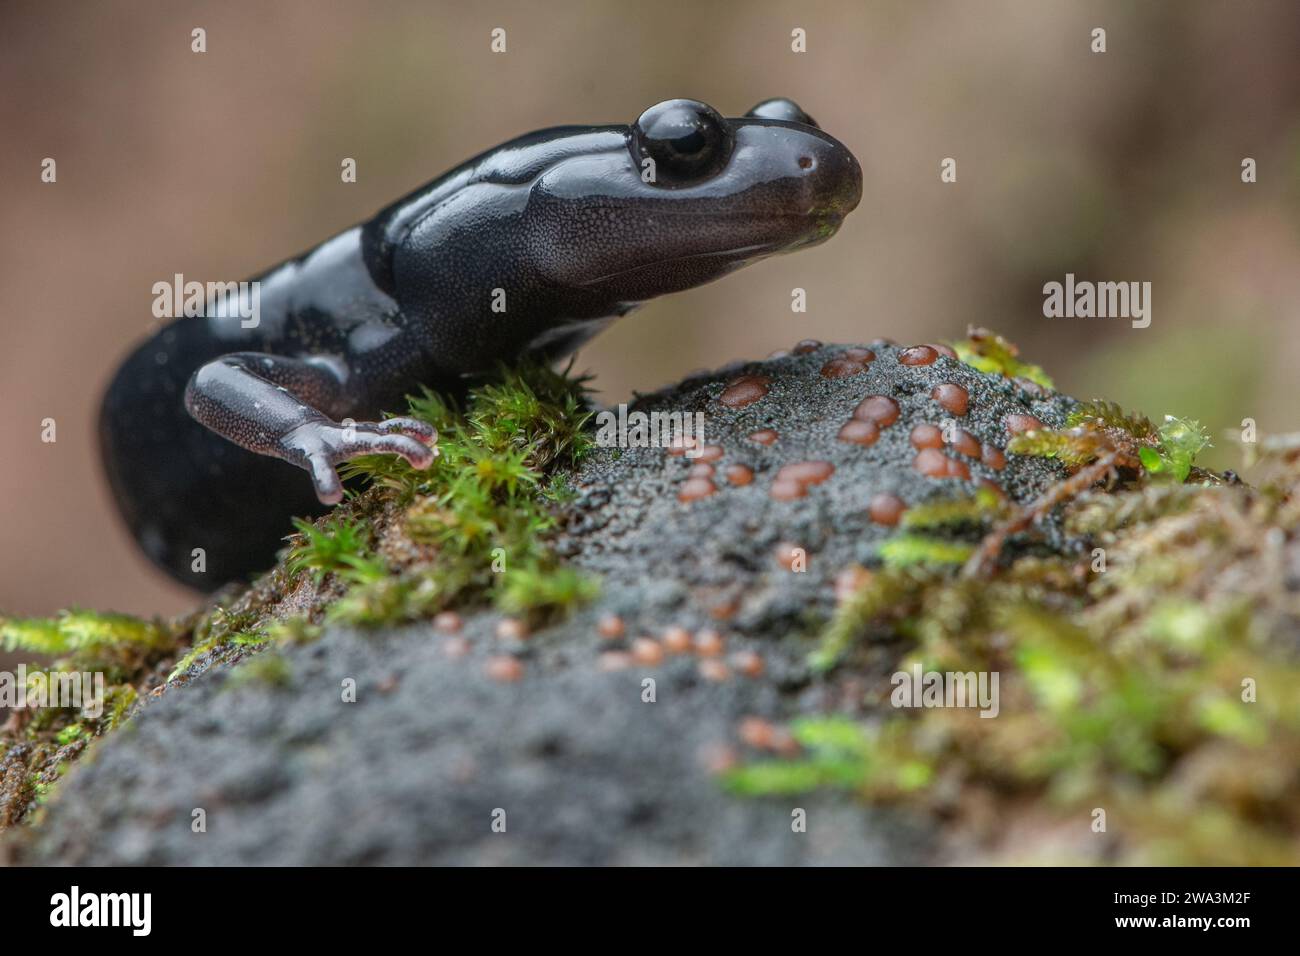 Un macro primo piano della salamandra nera di Santa Cruz (Aneides niger), una specie anfibia minacciata endemica dell'area della baia di San Francisco in California. Foto Stock